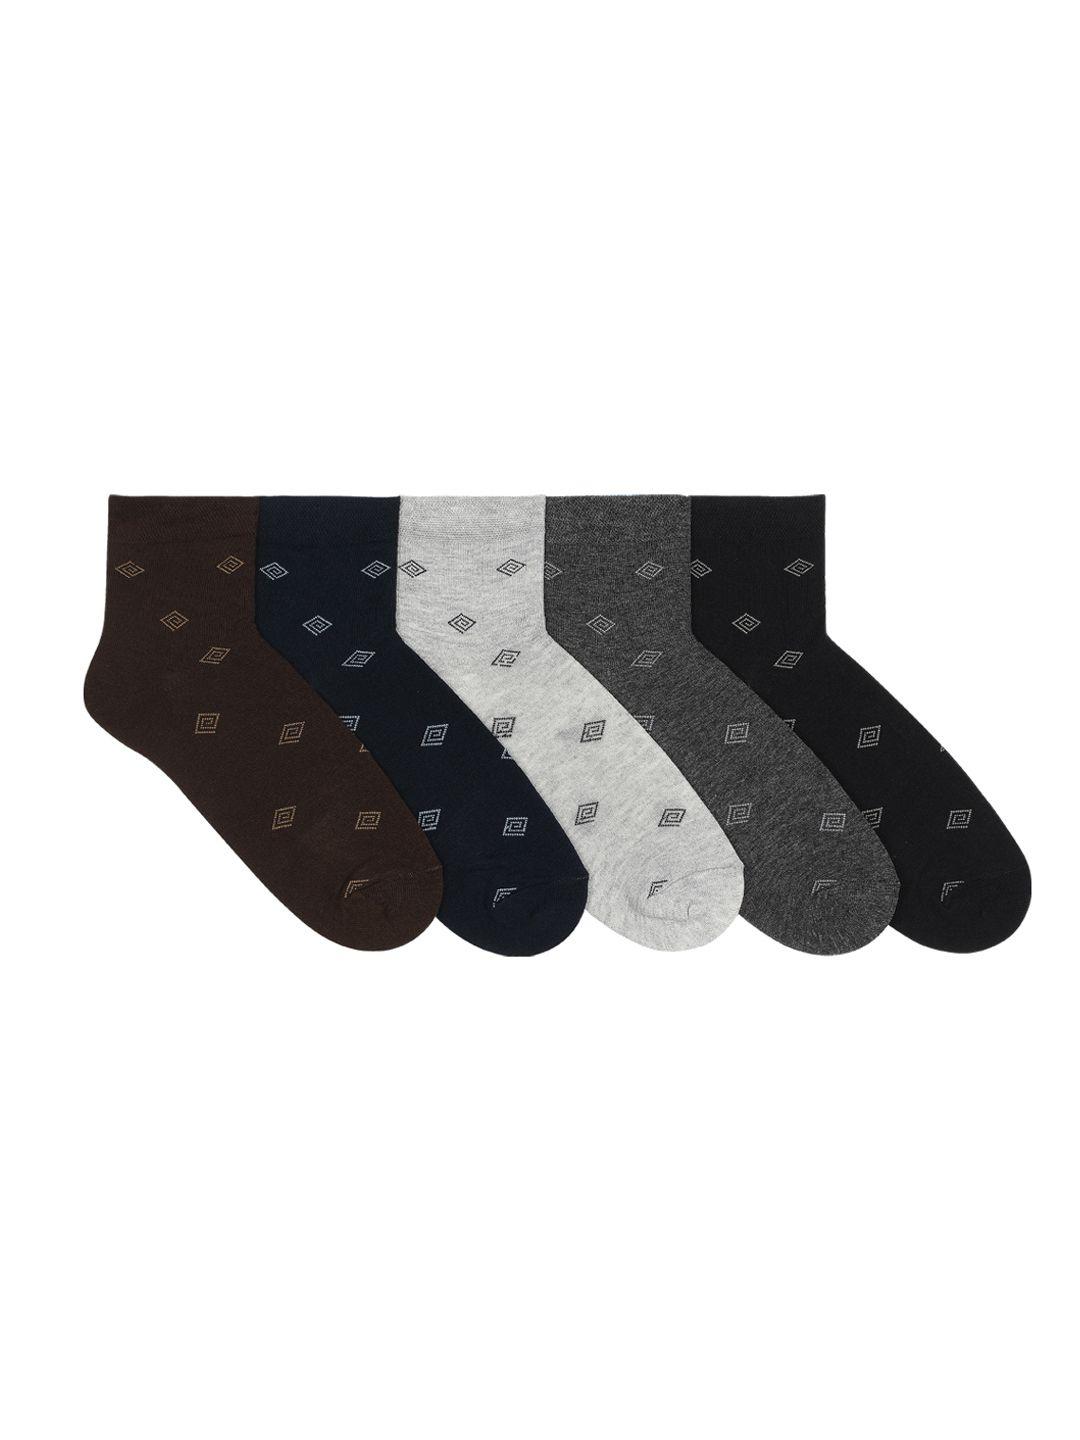 supersox men pack of 5 assorted socks